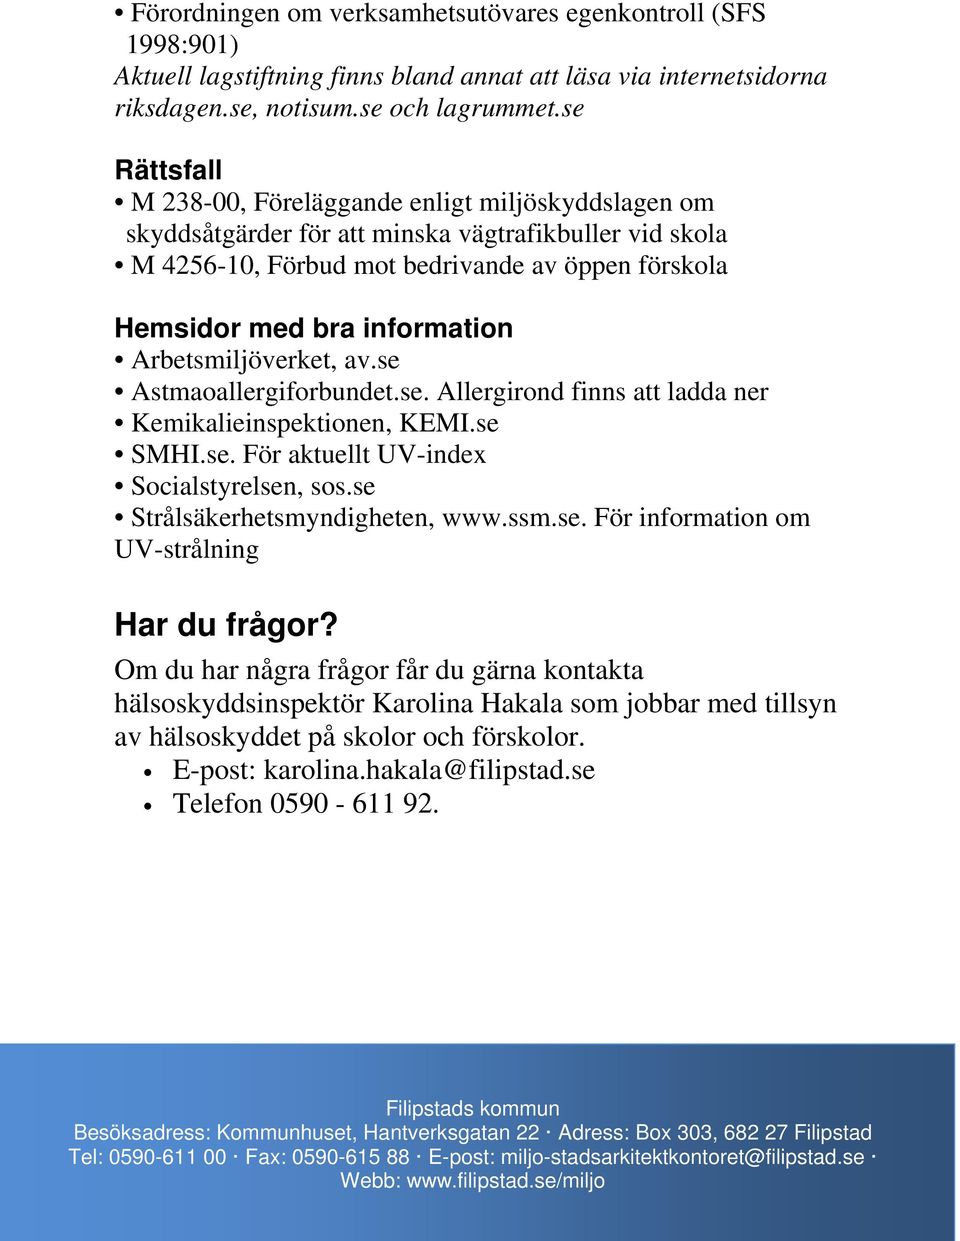 Arbetsmiljöverket, av.se Astmaoallergiforbundet.se. Allergirond finns att ladda ner Kemikalieinspektionen, KEMI.se SMHI.se. För aktuellt UV-index Socialstyrelsen, sos.